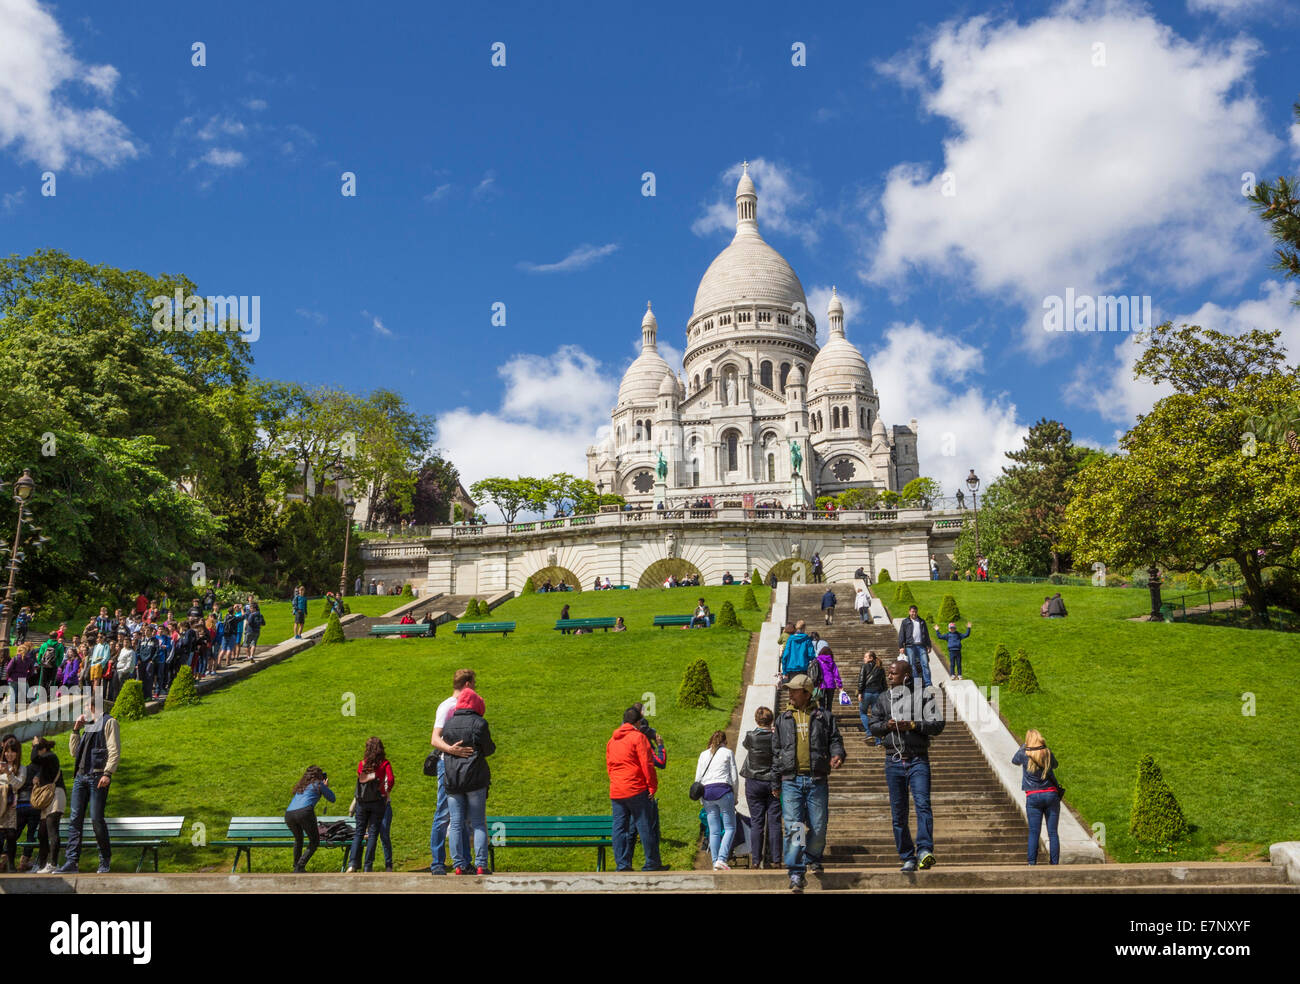 Basilika, Kirche, Stadt, Frankreich, Montmartre, Paris, Sacre Coeur, Architektur, Kirche, Gärten, grün, Hügel, Menschen, Tourismus, Tra Stockfoto